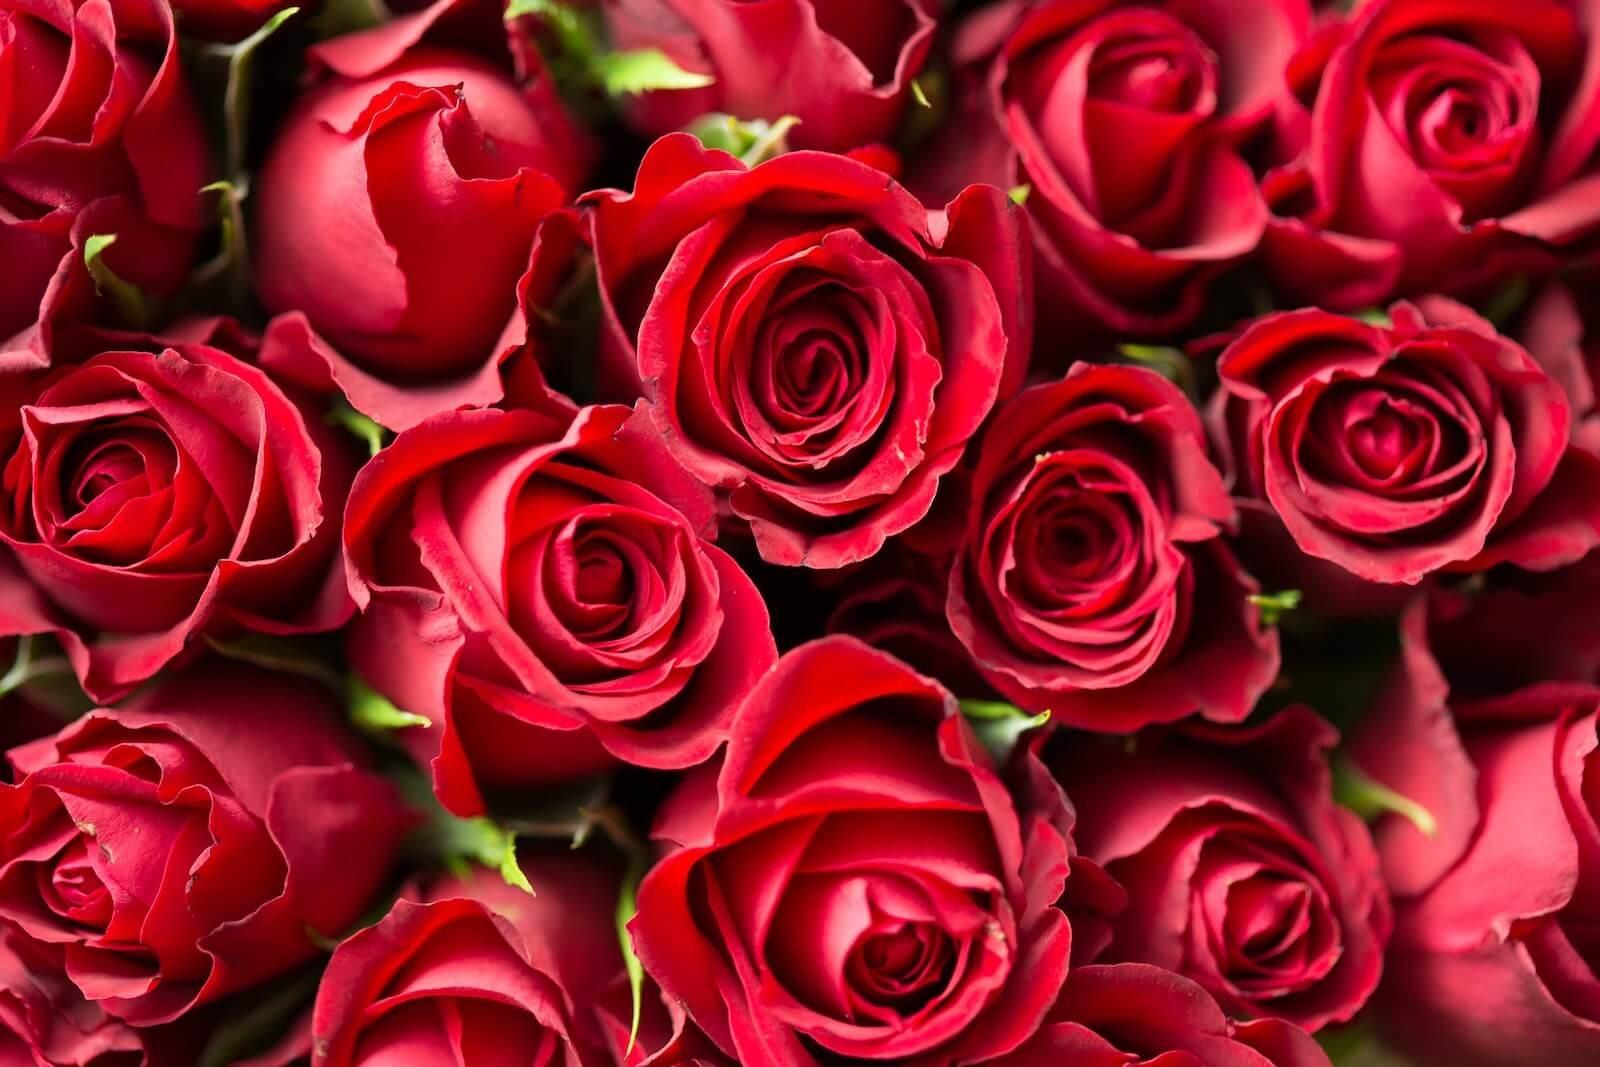 Rose Day 2024: प्यार का महीना चल रहा है। वैलेंटाइन डे इसी महीने यानी फरवरी में मनाया जा सकता है. वैलेंटाइन वीक एक हफ्ते पहले ही शुरू हो जाता है, जिसका हर दिन खास होता है। पहला दिन यानी 7 फरवरी को सड़क दिवस के रूप में मनाया जाता है। गुलाब प्रेम का प्रतीक है। ऐसे में गुलाब के बिना प्यार का सप्ताह अधूरा है। गुलाब प्यार का इजहार करने का एक खूबसूरत तरीका है। इसके अलावा गुलाब कई अन्य भावनाओं को भी व्यक्त करने में सक्षम है। आप अलग-अलग रंगों के गुलाब देकर सामने वाले को अपनी भावनाएं व्यक्त कर सकते हैं। बहुत से लोग जानते हैं कि लाल गुलाब प्यार का प्रतीक है। लेकिन क्या आप जानते हैं कि पीला, नारंगी और गुलाबी गुलाब किसे दिया जाता है और उनका क्या मतलब होता है? आइए जानते हैं गुलाब के हर रंग का भावनात्मक मतलब, ताकि हम सही व्यक्ति को गुलाब का सही रंग दे सकें।  लाल गुलाब लाल रंग प्रेम और सुहाग का प्रतीक है। विवाहित स्त्रियाँ अपने पति की लम्बी उम्र के लिए लाल जूते, लाल सिन्दूर और लाल चूड़ियाँ पहनती हैं। वहीं, लाल गुलाब भी इसी तरह के प्यार को दर्शाता है। अगर आप रोज डे पर अपने पार्टनर को गुलाब देना चाहते हैं तो लाल रंग सबसे उपयुक्त रहेगा। लाल फूल दिखाएंगे प्यार की गहराई. वहीं, अगर आप किसी से अपने प्यार का इजहार करना चाहते हैं तो उन्हें लाल फूल गिफ्ट करें।  गुलाबी गुलाब गुलाबी गुलाब न सिर्फ देखने में खूबसूरत लगते हैं बल्कि उनके रंग का भी एक खास मतलब होता है। गुलाबी गुलाब उन लोगों को दिया जा सकता है जो आपके जीवन में खास हैं। यह रंग प्यार और रिश्ते की गहराई को महसूस करने या व्यक्त करने का प्रतीक है। आप अपने सबसे अच्छे दोस्त को गुलाबी गुलाब दे सकते हैं। अगर आप धन्यवाद भी कहना चाहते हैं तो गुलाबी गुलाब देकर अपना आभार व्यक्त करें।  पीला गुलाब रोज डे पर पीला गुलाब भी दिया जा सकता है. पीला फूल मित्रता का प्रतीक है। अगर आप किसी से दोस्ती करना चाहते हैं तो इस दिन का इंतजार करें। उन्हें पीला गुलाब देकर जताएं कि आप उनसे दोस्ती करना चाहते हैं। अगर आपका पार्टनर आपका गुलाब स्वीकार कर लेता है तो समझ लीजिए कि उसने आपकी दोस्ती स्वीकार कर ली है।यहां दोस्ती की एक नई शुरुआत होती है। पीला गुलाब रिश्ते की शुरुआत का भी प्रतीक है। दरअसल, कोई भी रिश्ता तभी मजबूत होता है जब उसमें मैत्रीपूर्ण भावनाएं शामिल हों।  नारंगी गुलाब नारंगी गुलाब आकर्षण का प्रतीक है। अगर आप किसी को पसंद करते हैं और उसके साथ अपना रिश्ता दोस्ती से आगे बढ़ाना चाहते हैं तो उसे नारंगी गुलाब दें। आप किसी व्यक्ति को इस रंग का गुलाब देकर बता सकते हैं कि आप उन्हें पसंद करते हैं। उन्हें समझना चाहते हैं और अपने रिश्ते को अधिक समय देना चाहते हैं। किसी के सम्मान में नारंगी गुलाब भी दिया जा सकता है।